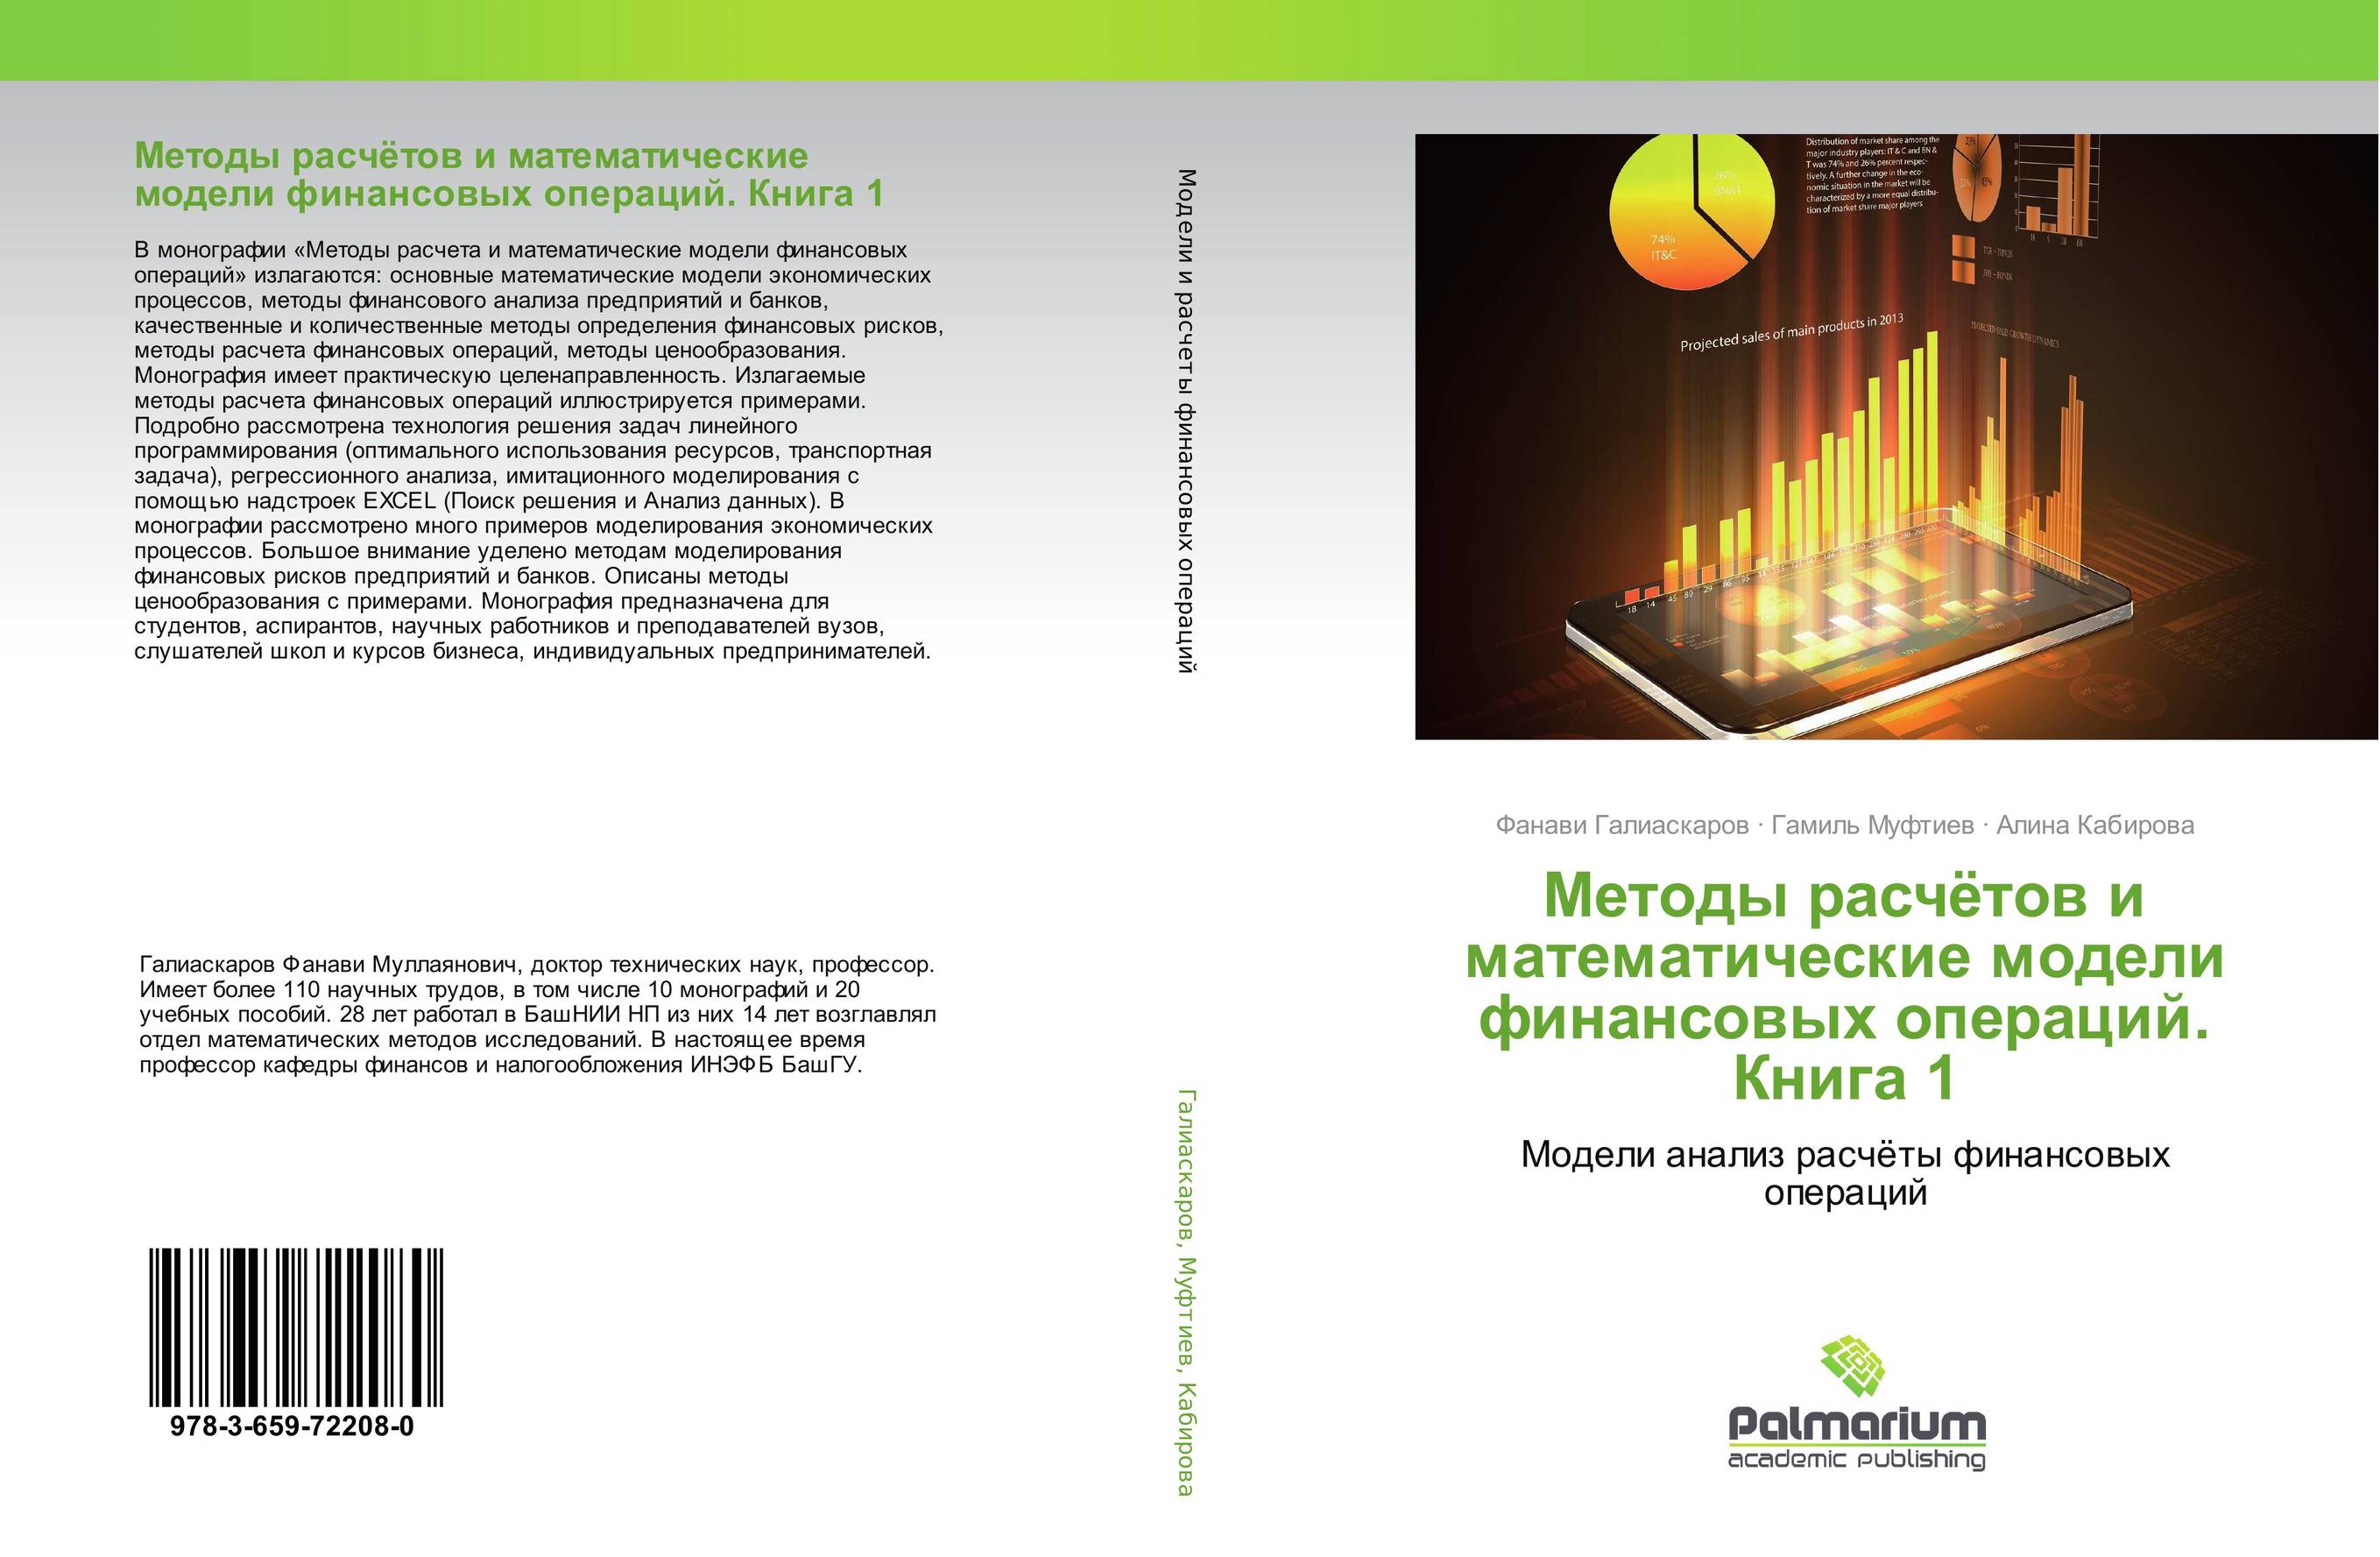 
        Методы расчётов и математические модели финансовых операций. Книга 1. Модели анализ расчёты финансовых операций.
      